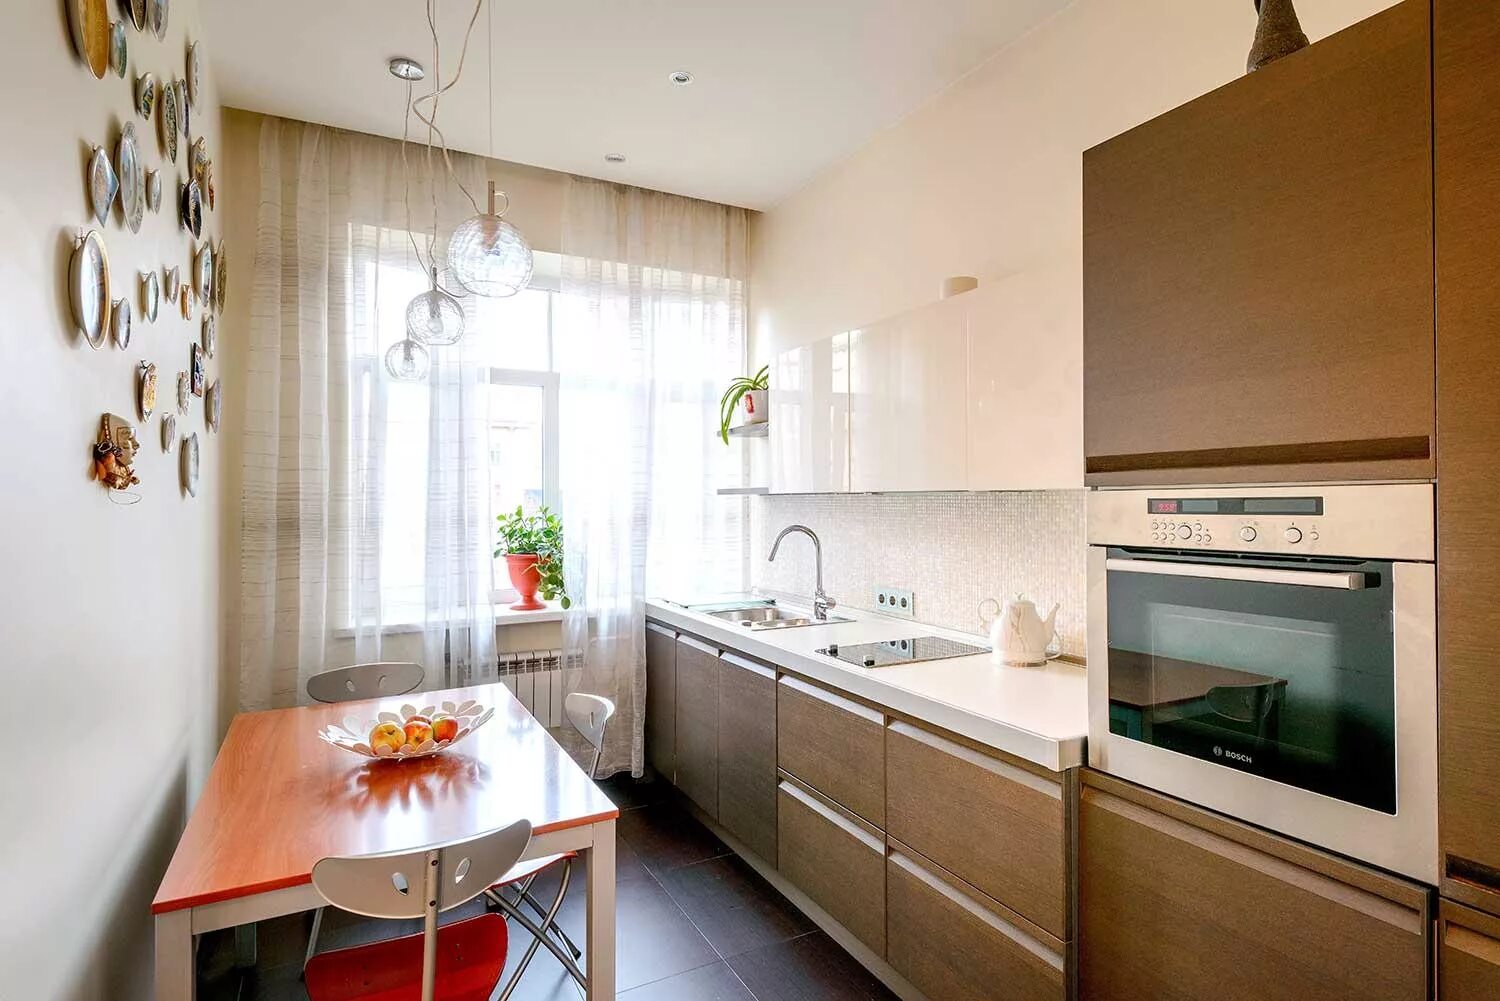 Квартира 63. 100 Квартирный дом в Новосибирске кухня. Покажи квартиру 63 в городе. Фотографии квартир в стоквартирном доме в Новосибирске.